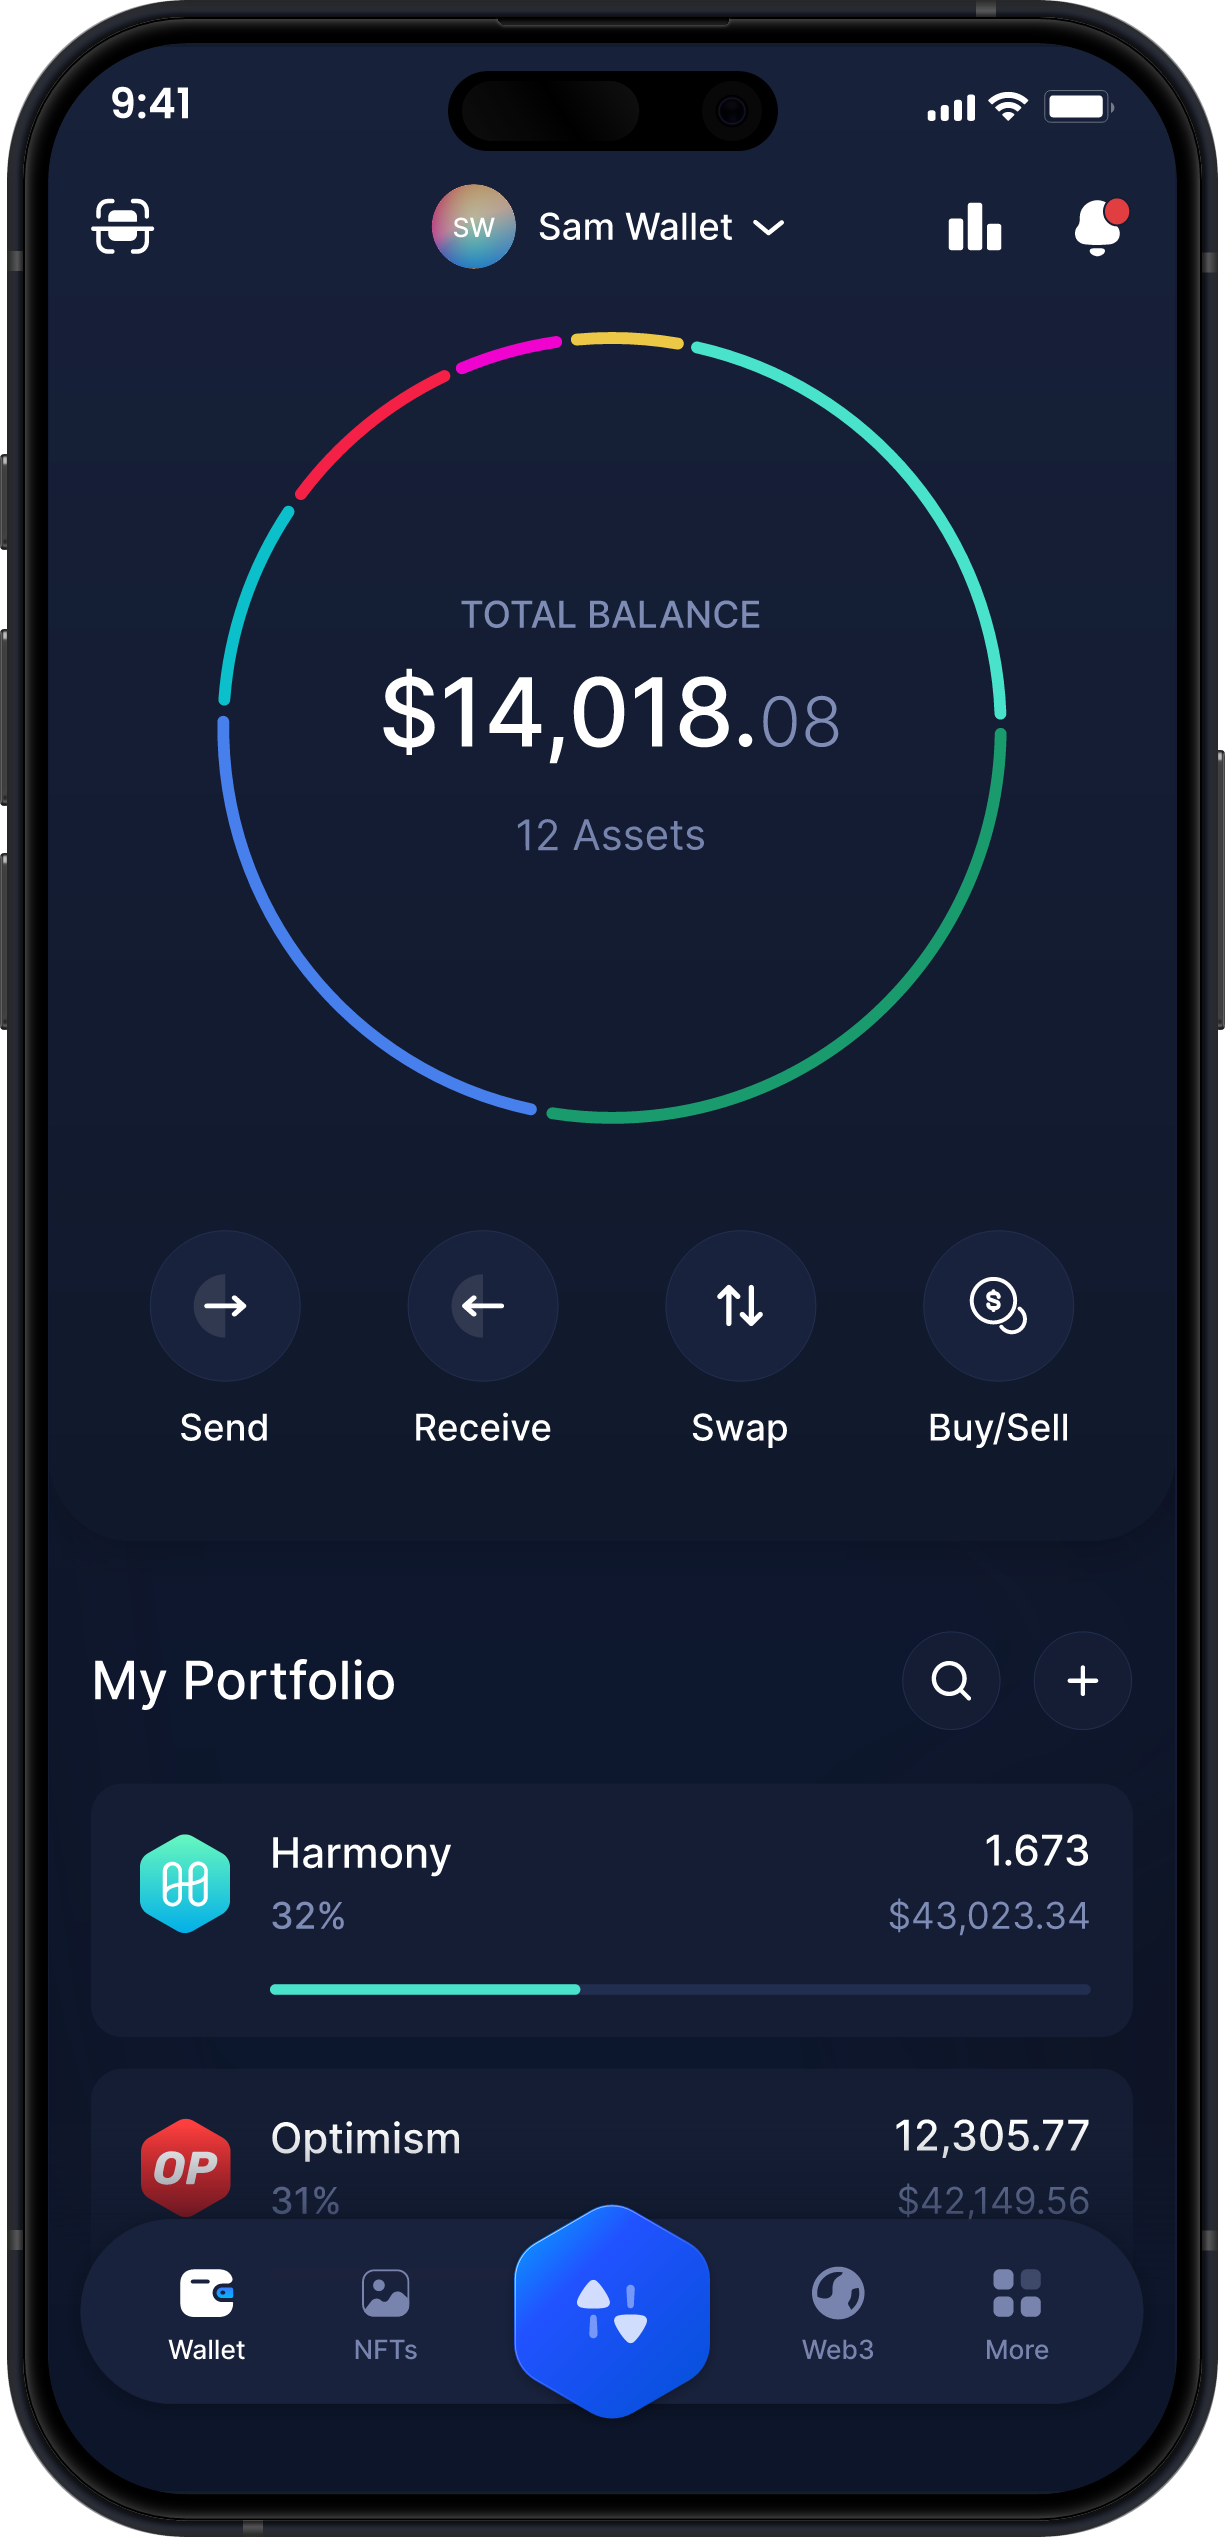 Infinity Mobile Harmony Wallet - ONE Dashboard